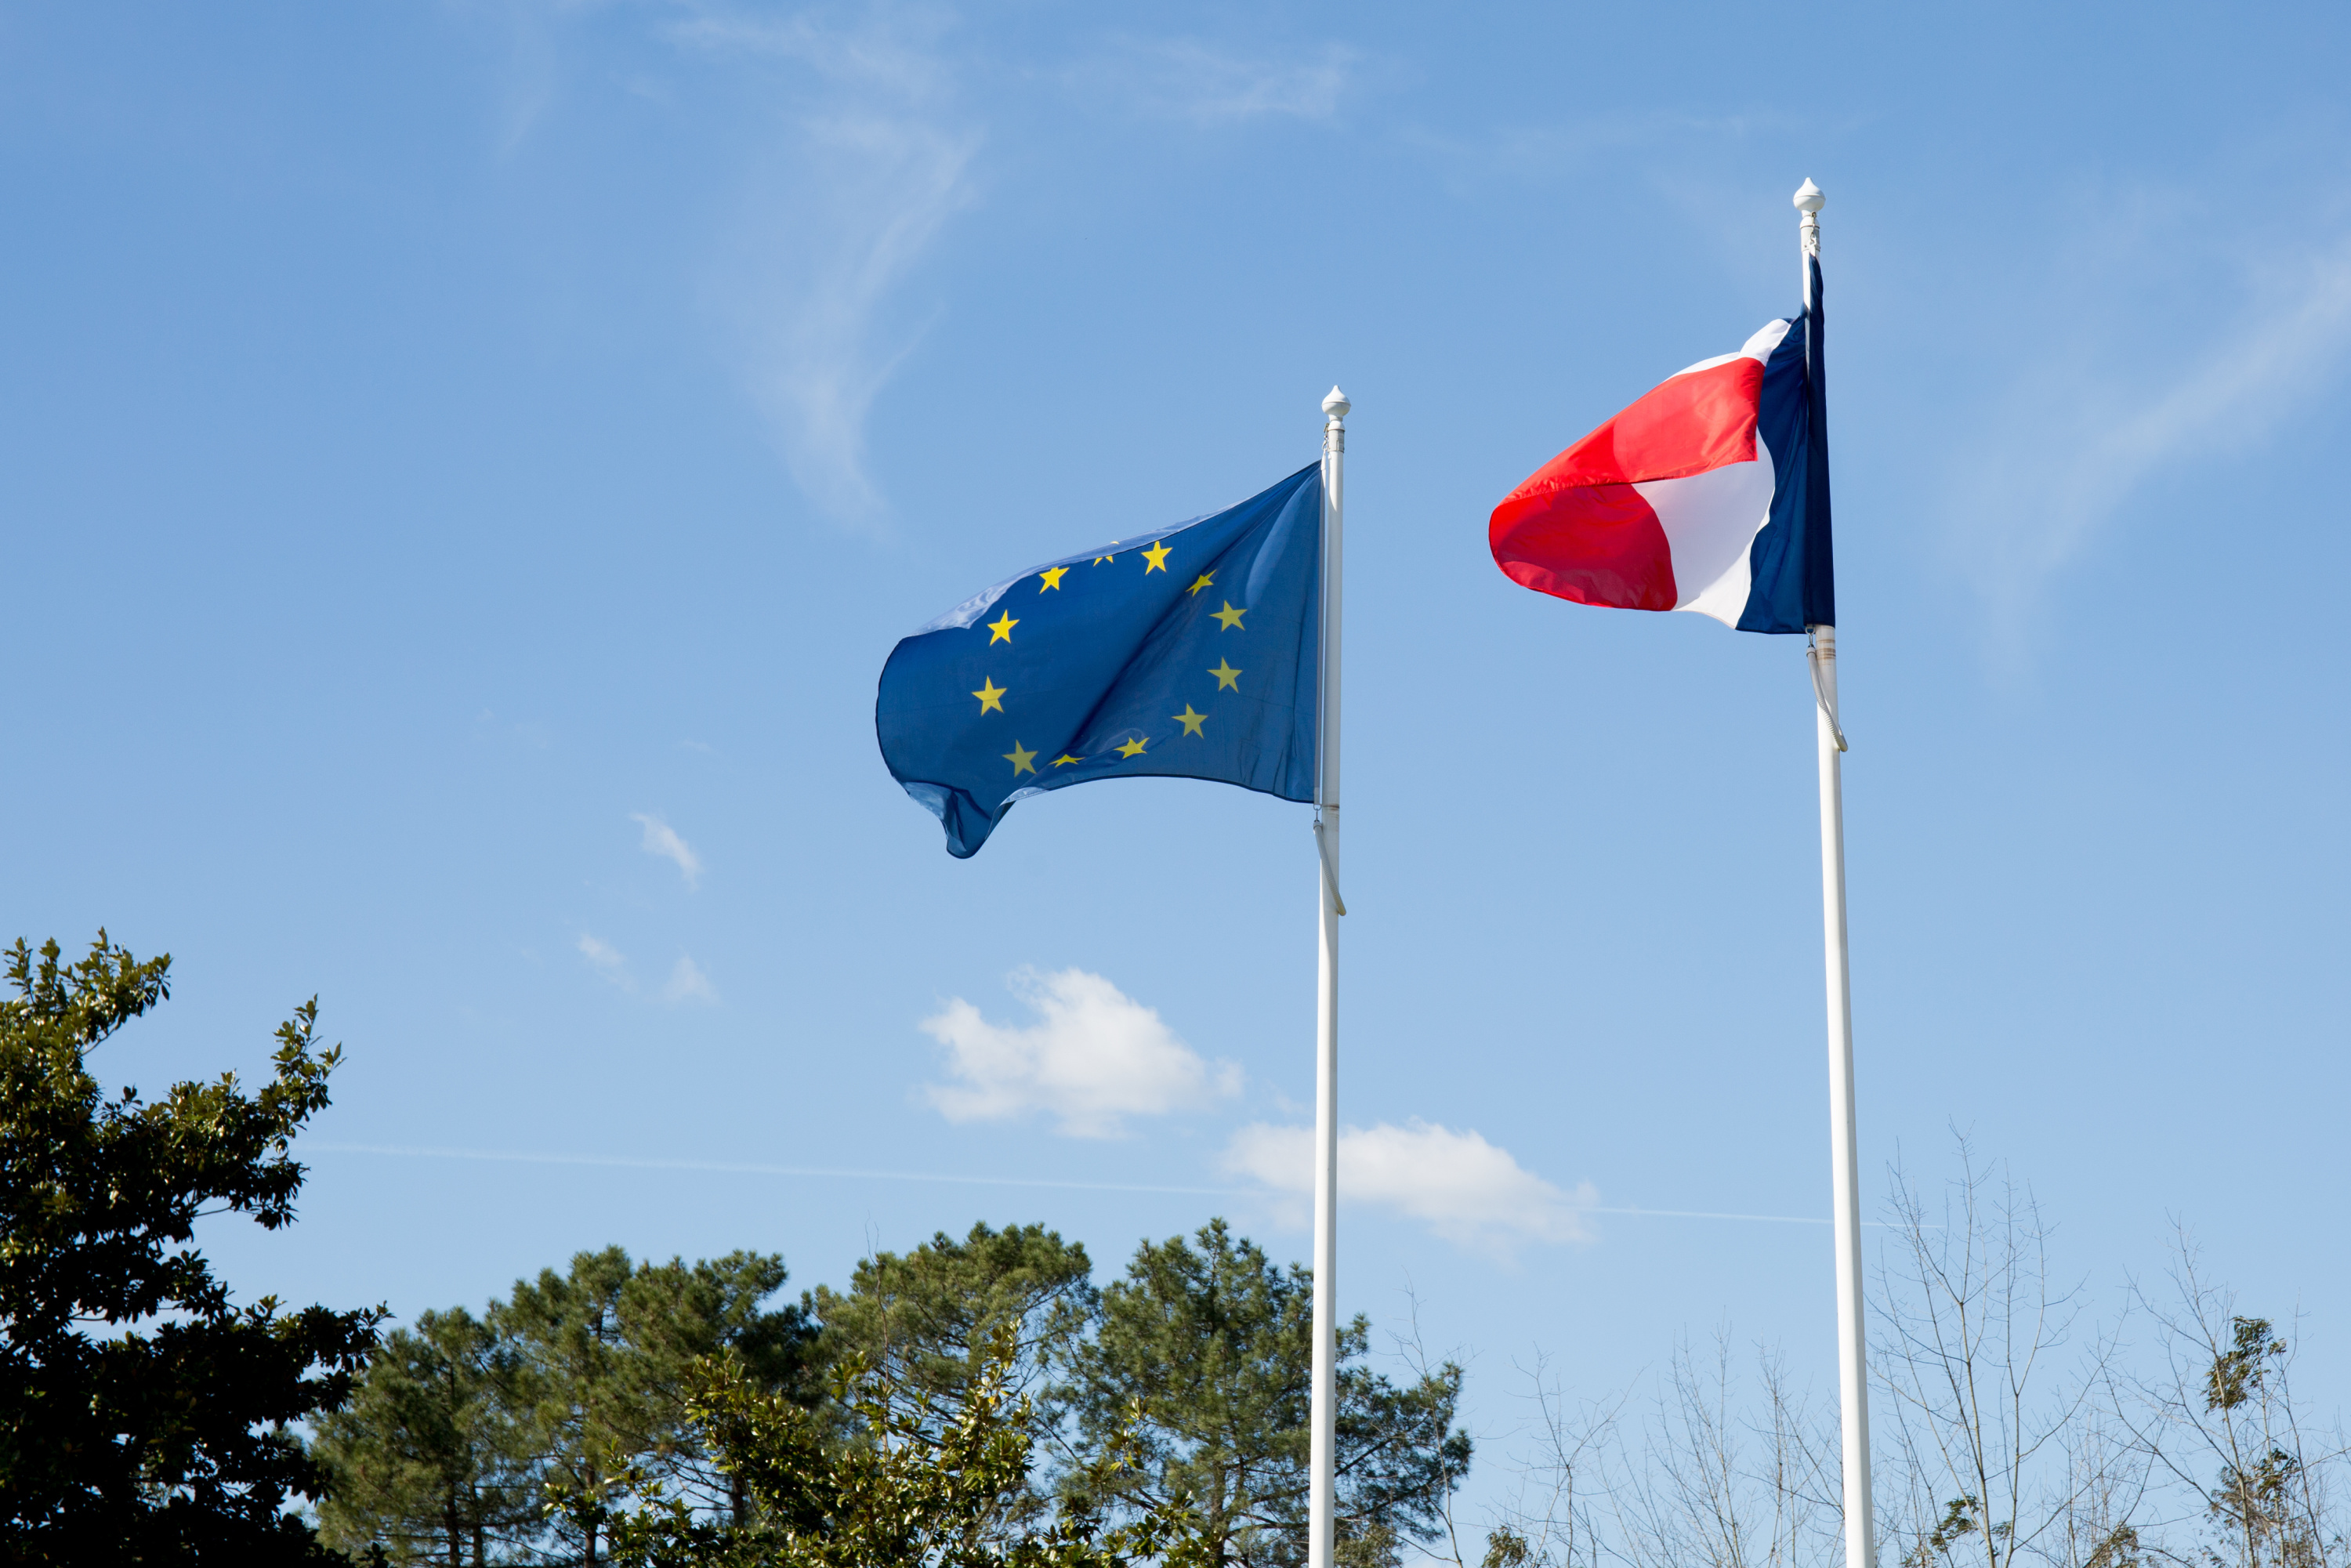 Pourquoi le drapeau européen obligatoire sur les mairies fait-il